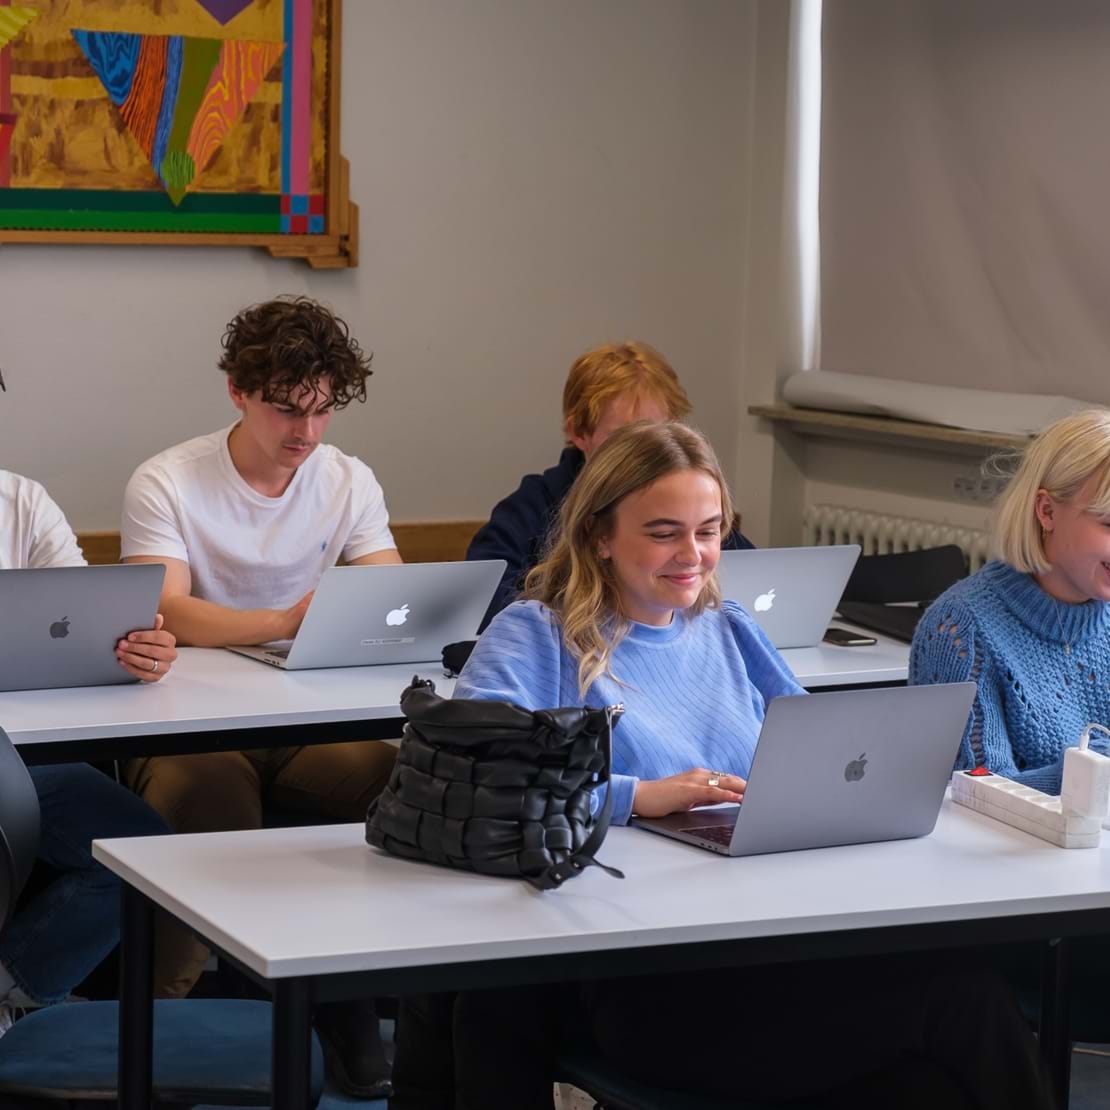 Elever arbejder på dere computere i klasselokalet